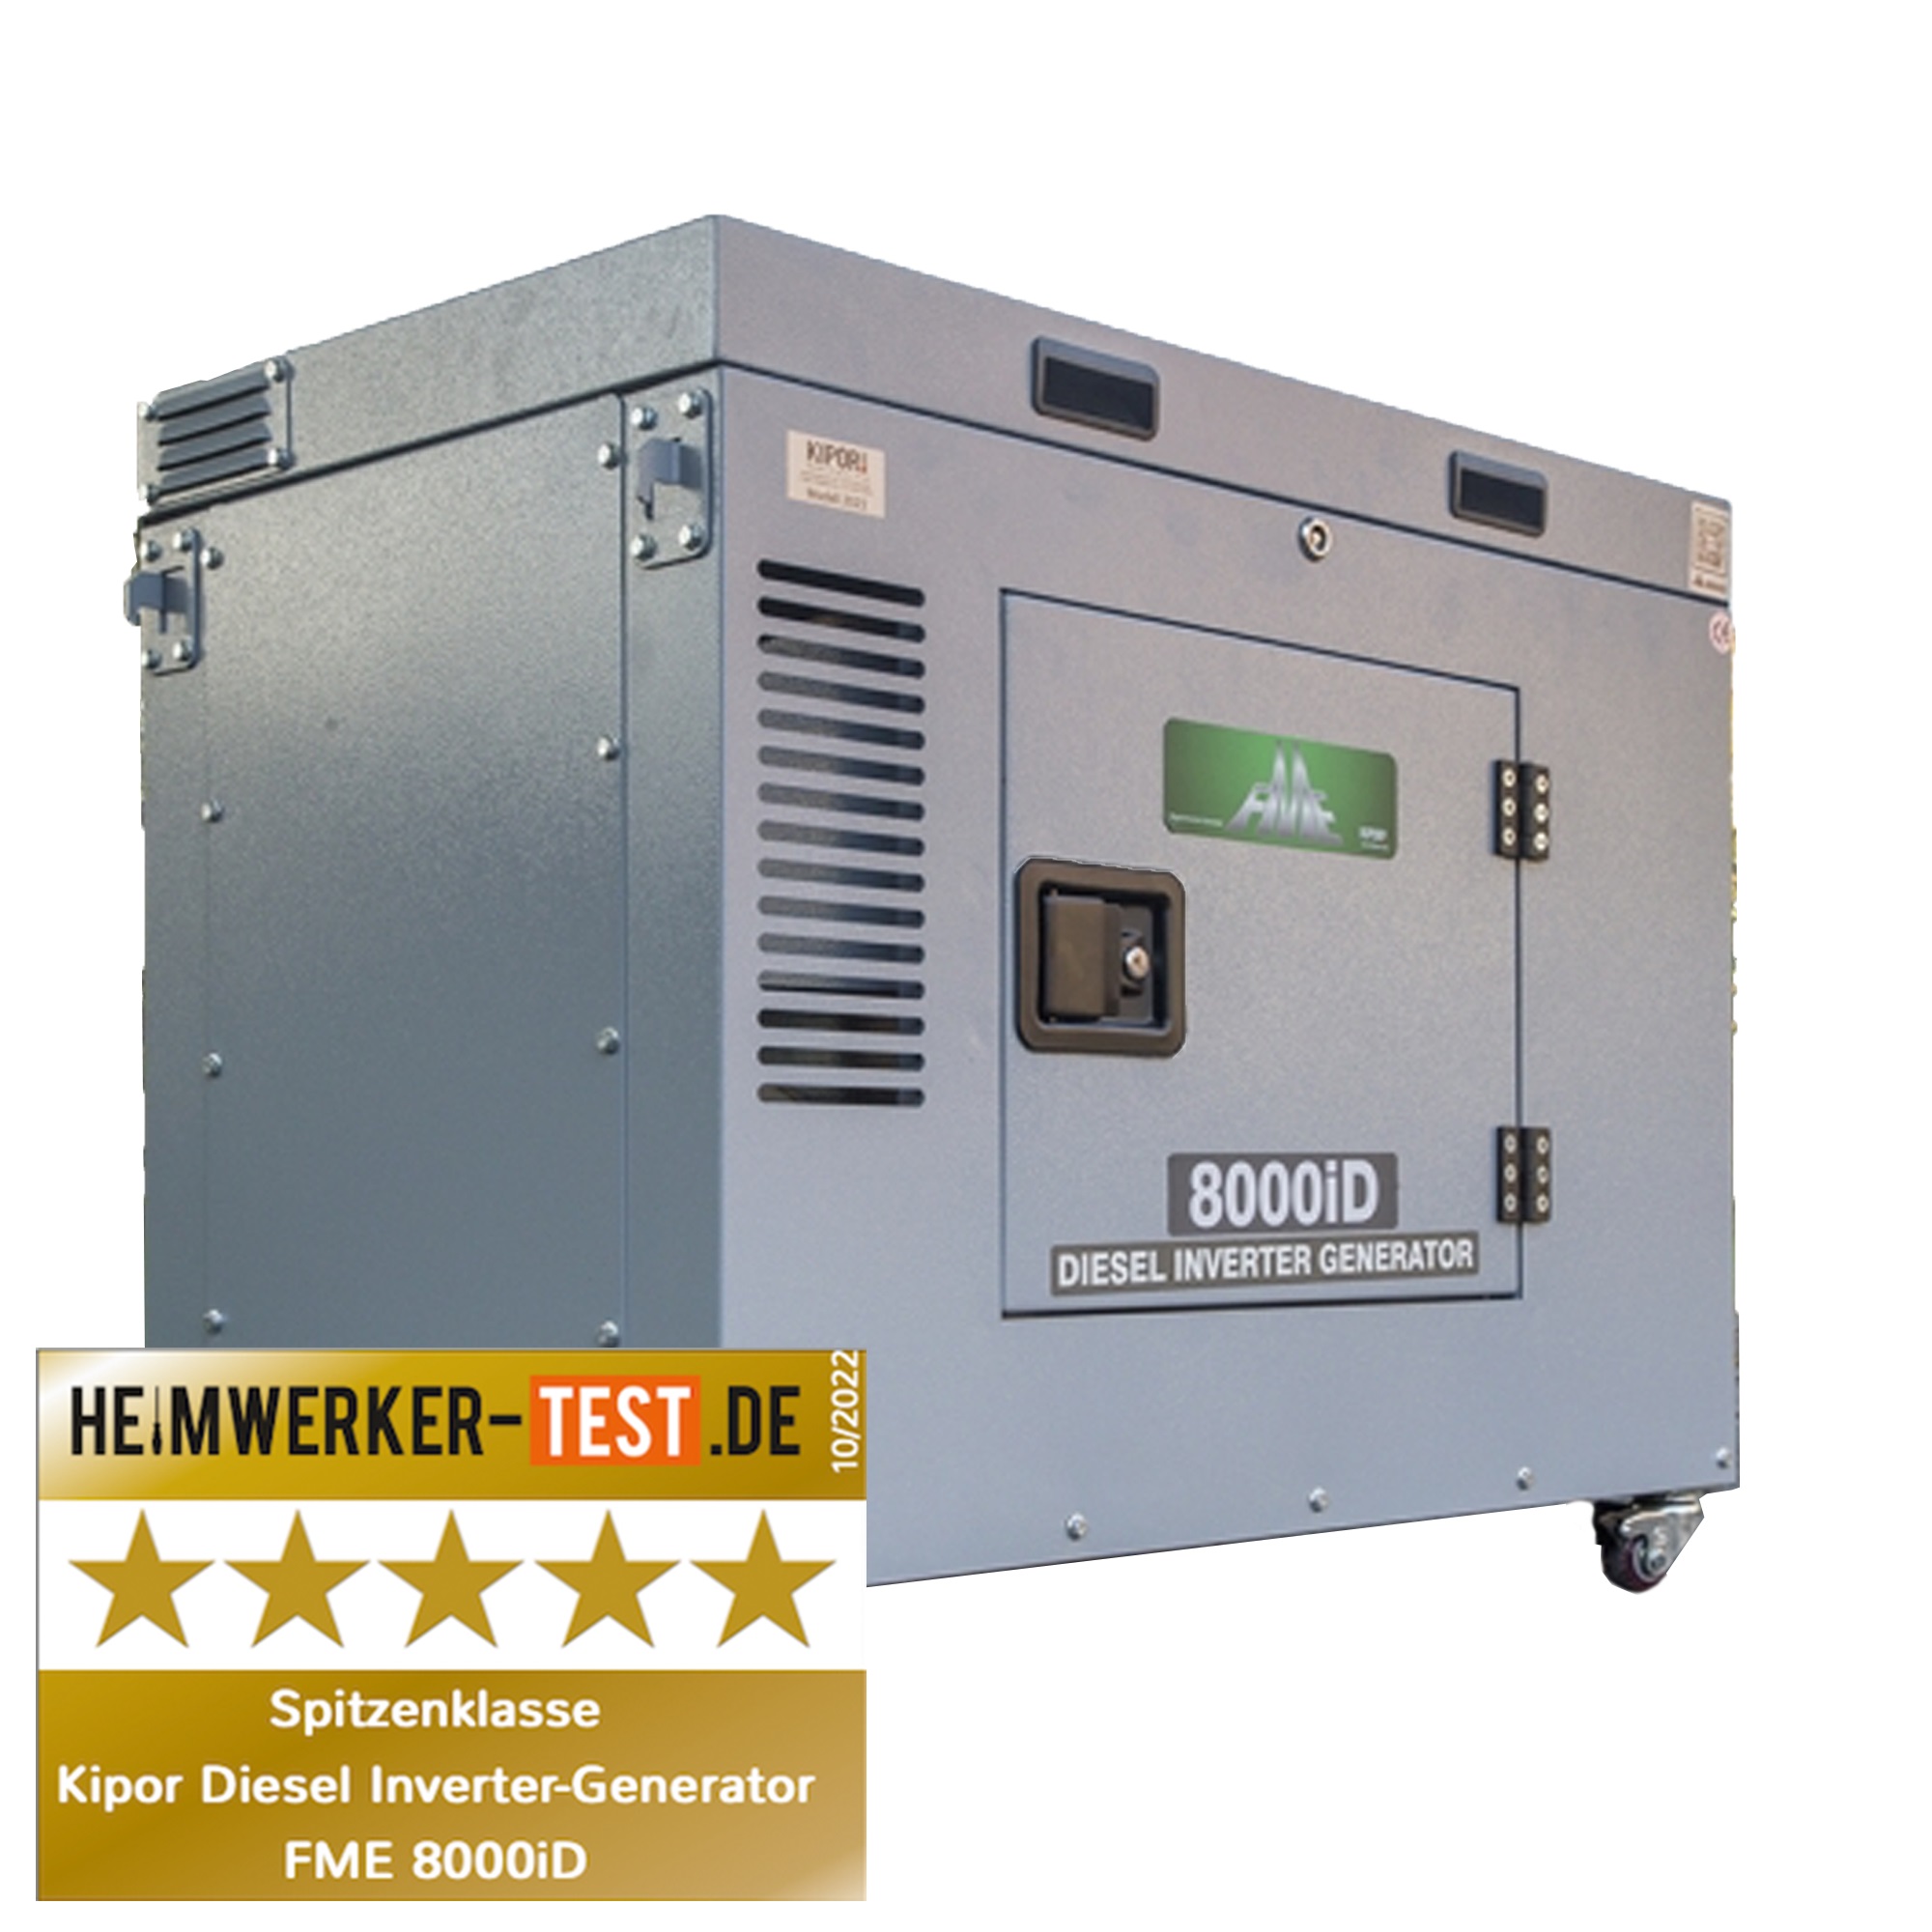 FME 8000iD Diesel Inverter Generator